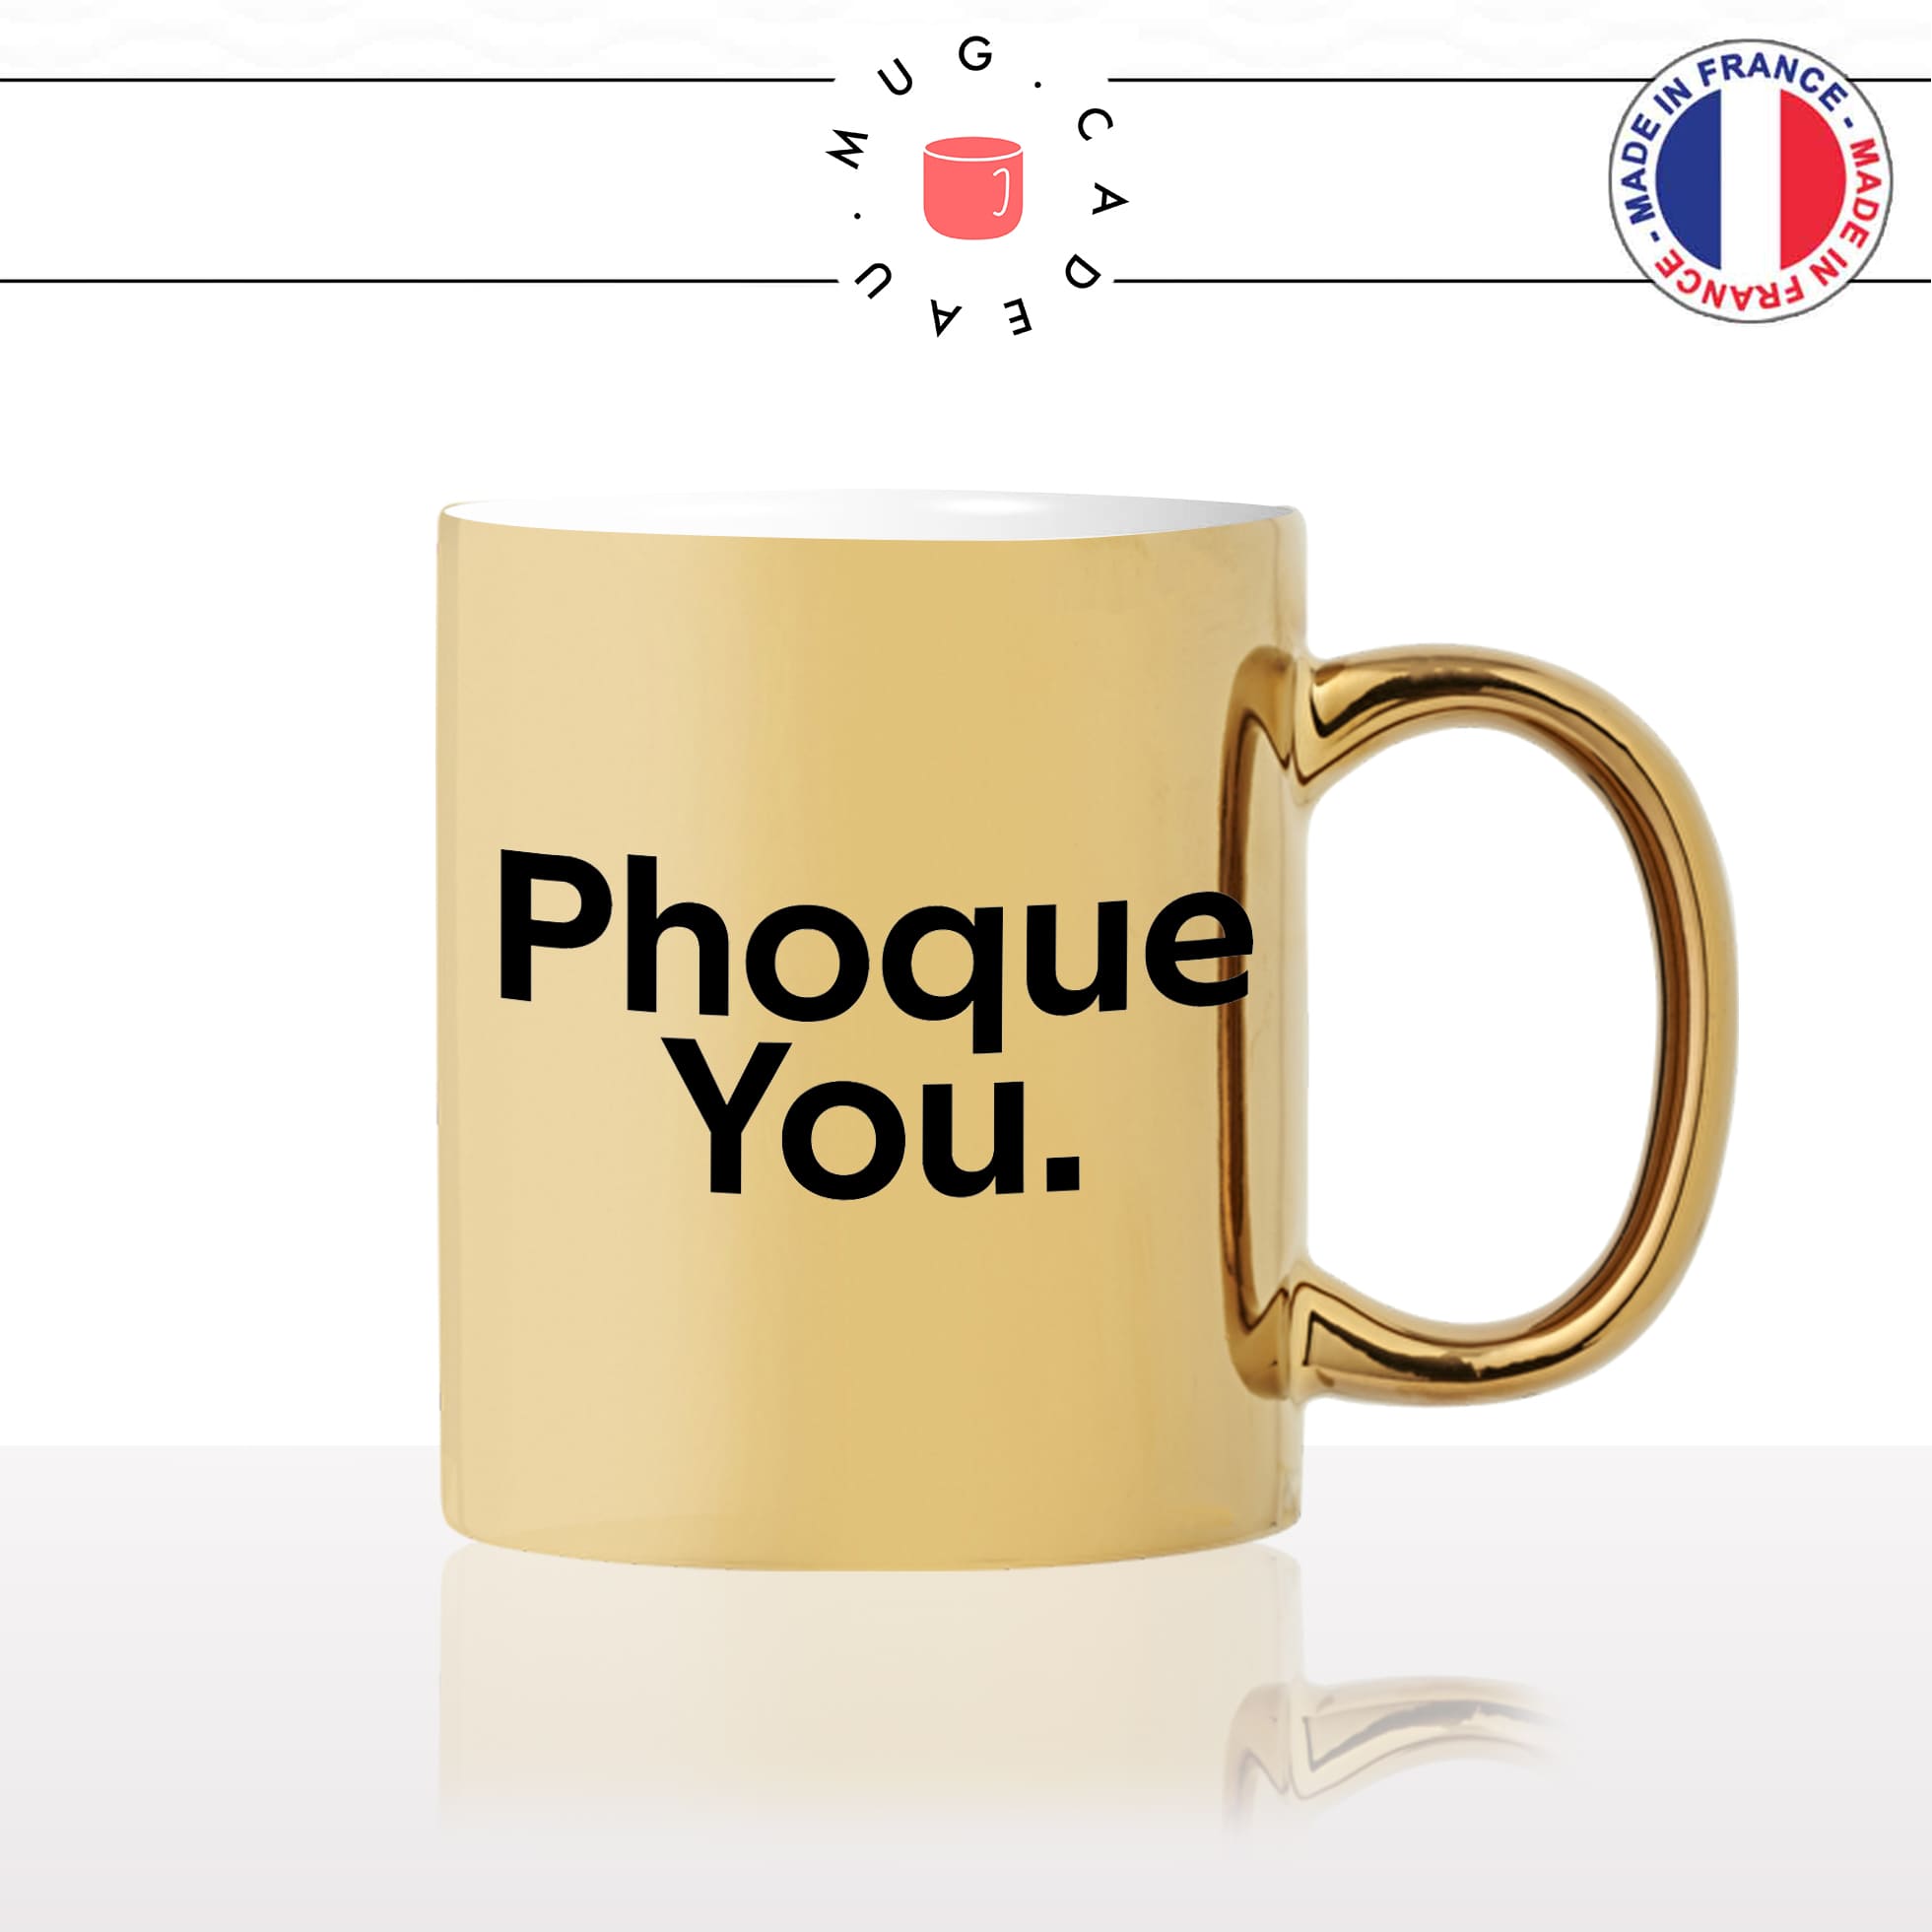 mug-tasse-or-doré-gold-phoque-you-fuck-u-animal-drole-humour-fun-idée-cadeau-originale-cool2